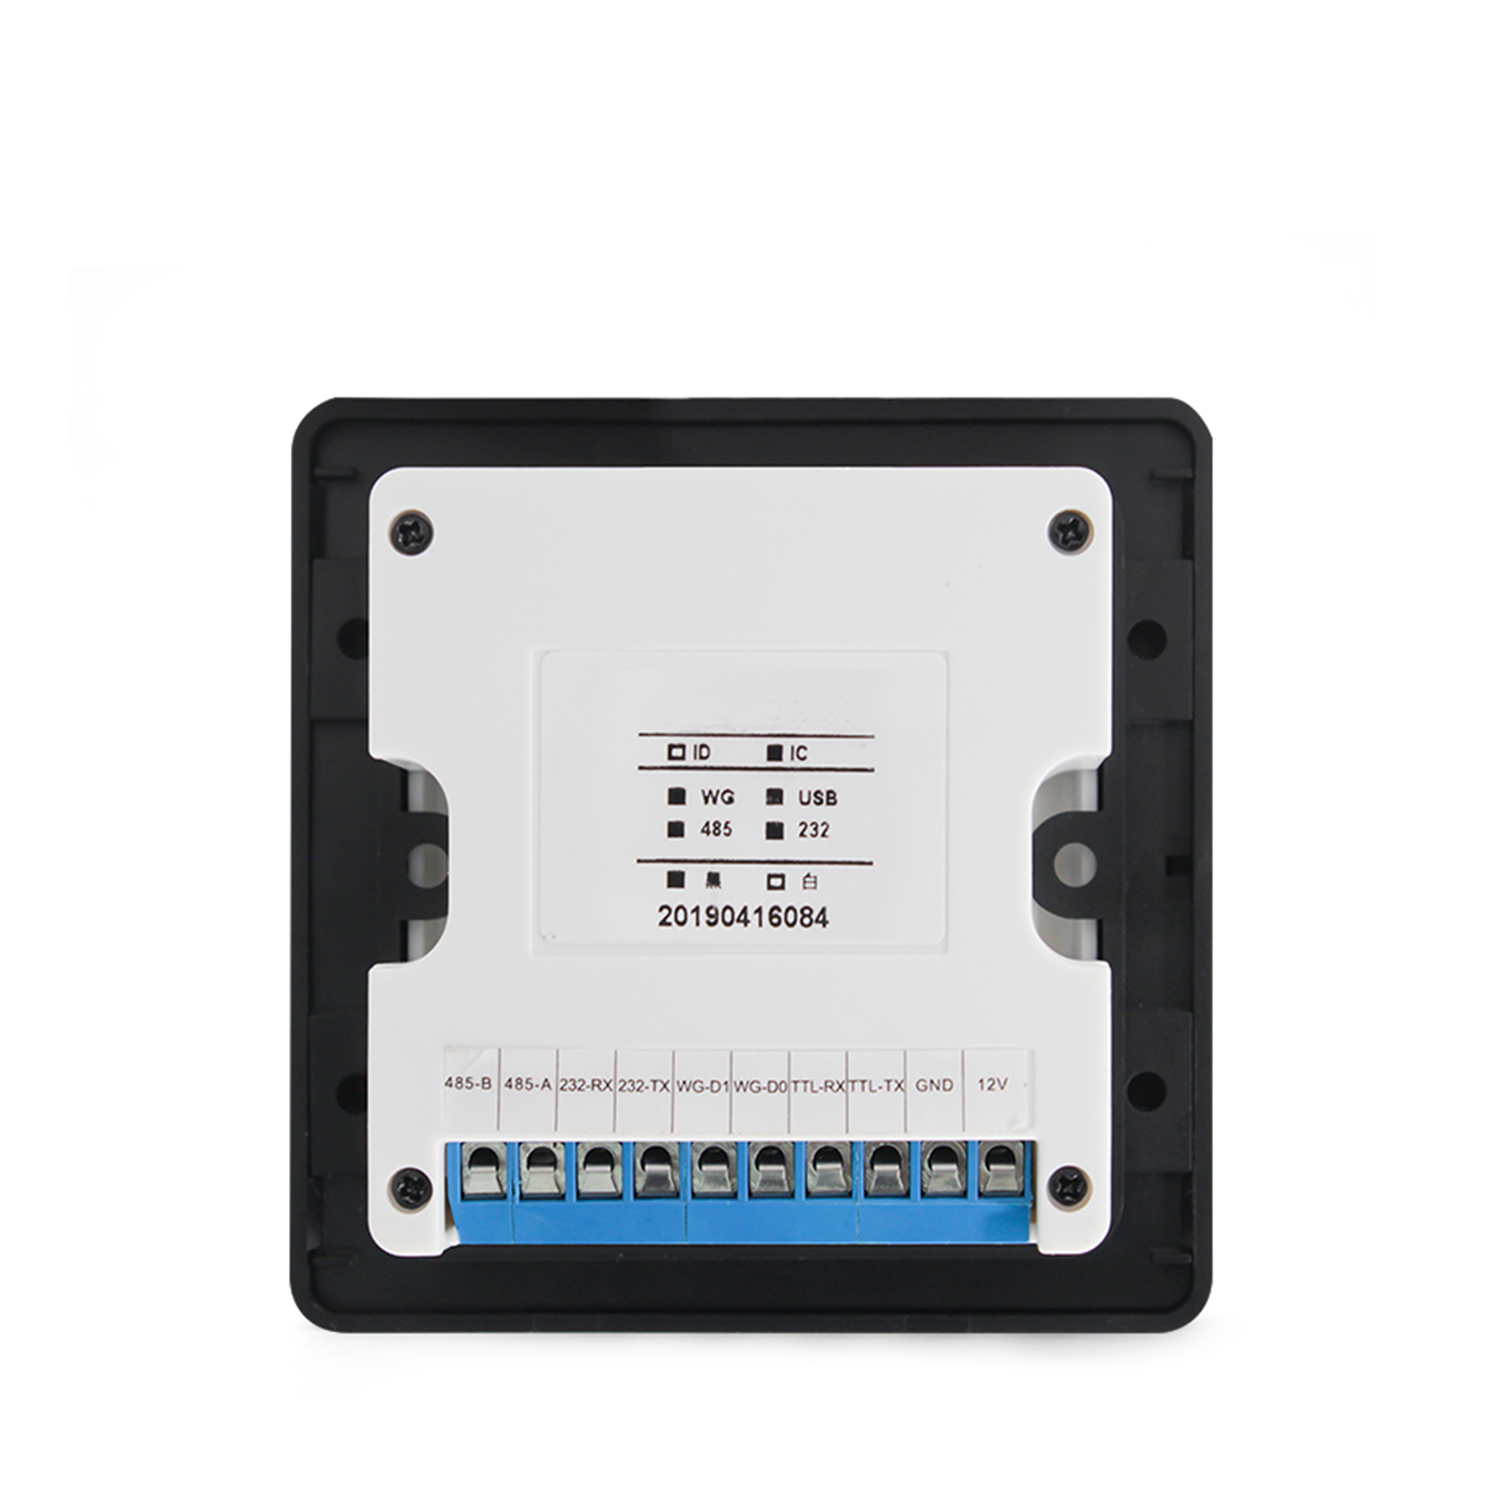 Лучший считыватель IC-карт контроля доступа Mifare Встроенный модуль сканирования QR-кода HM20